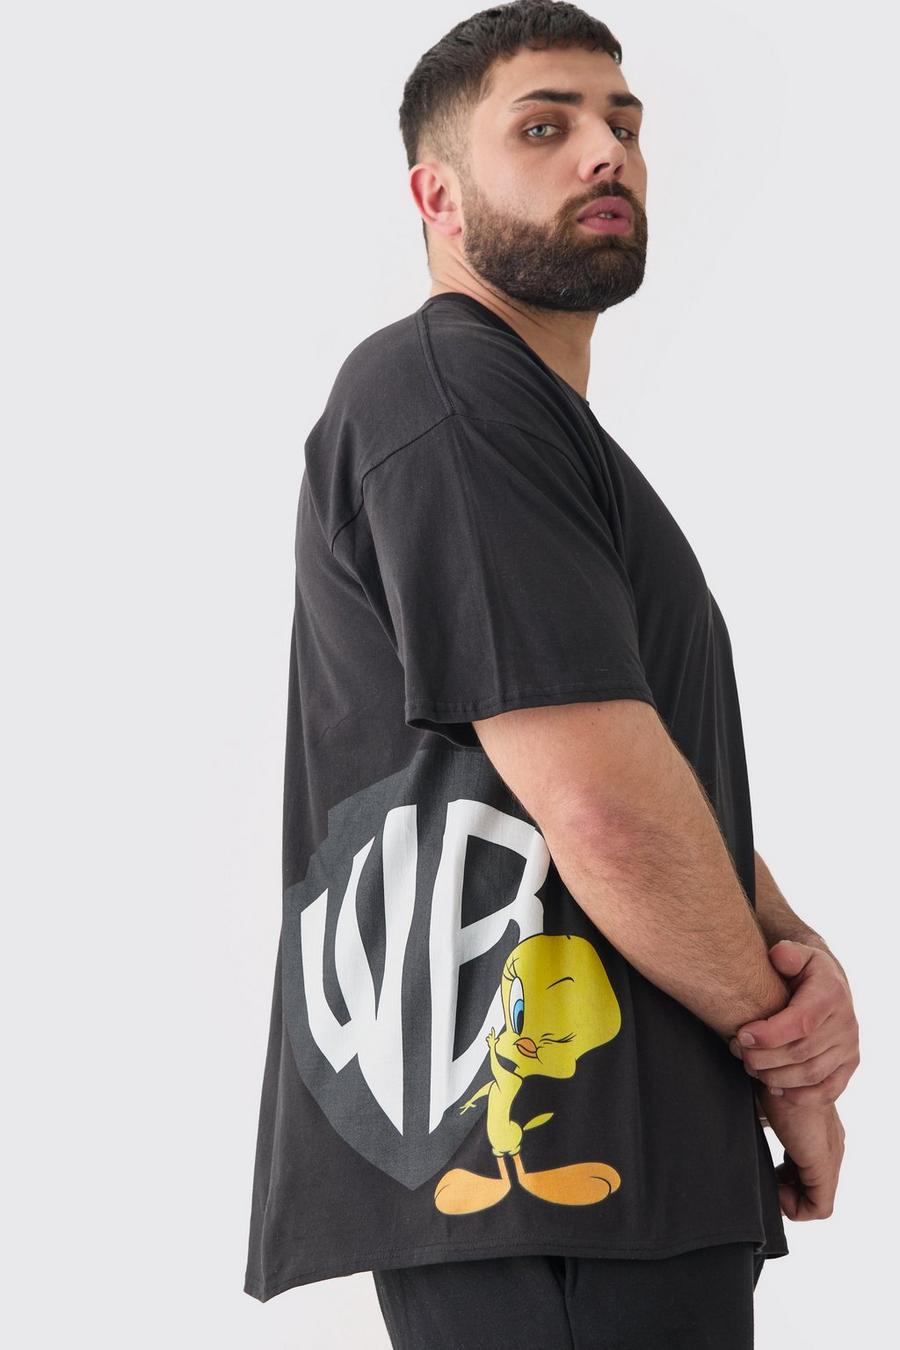 T-shirt Plus Size ufficiale Warner Bros con stampa di Titti laterale, Black